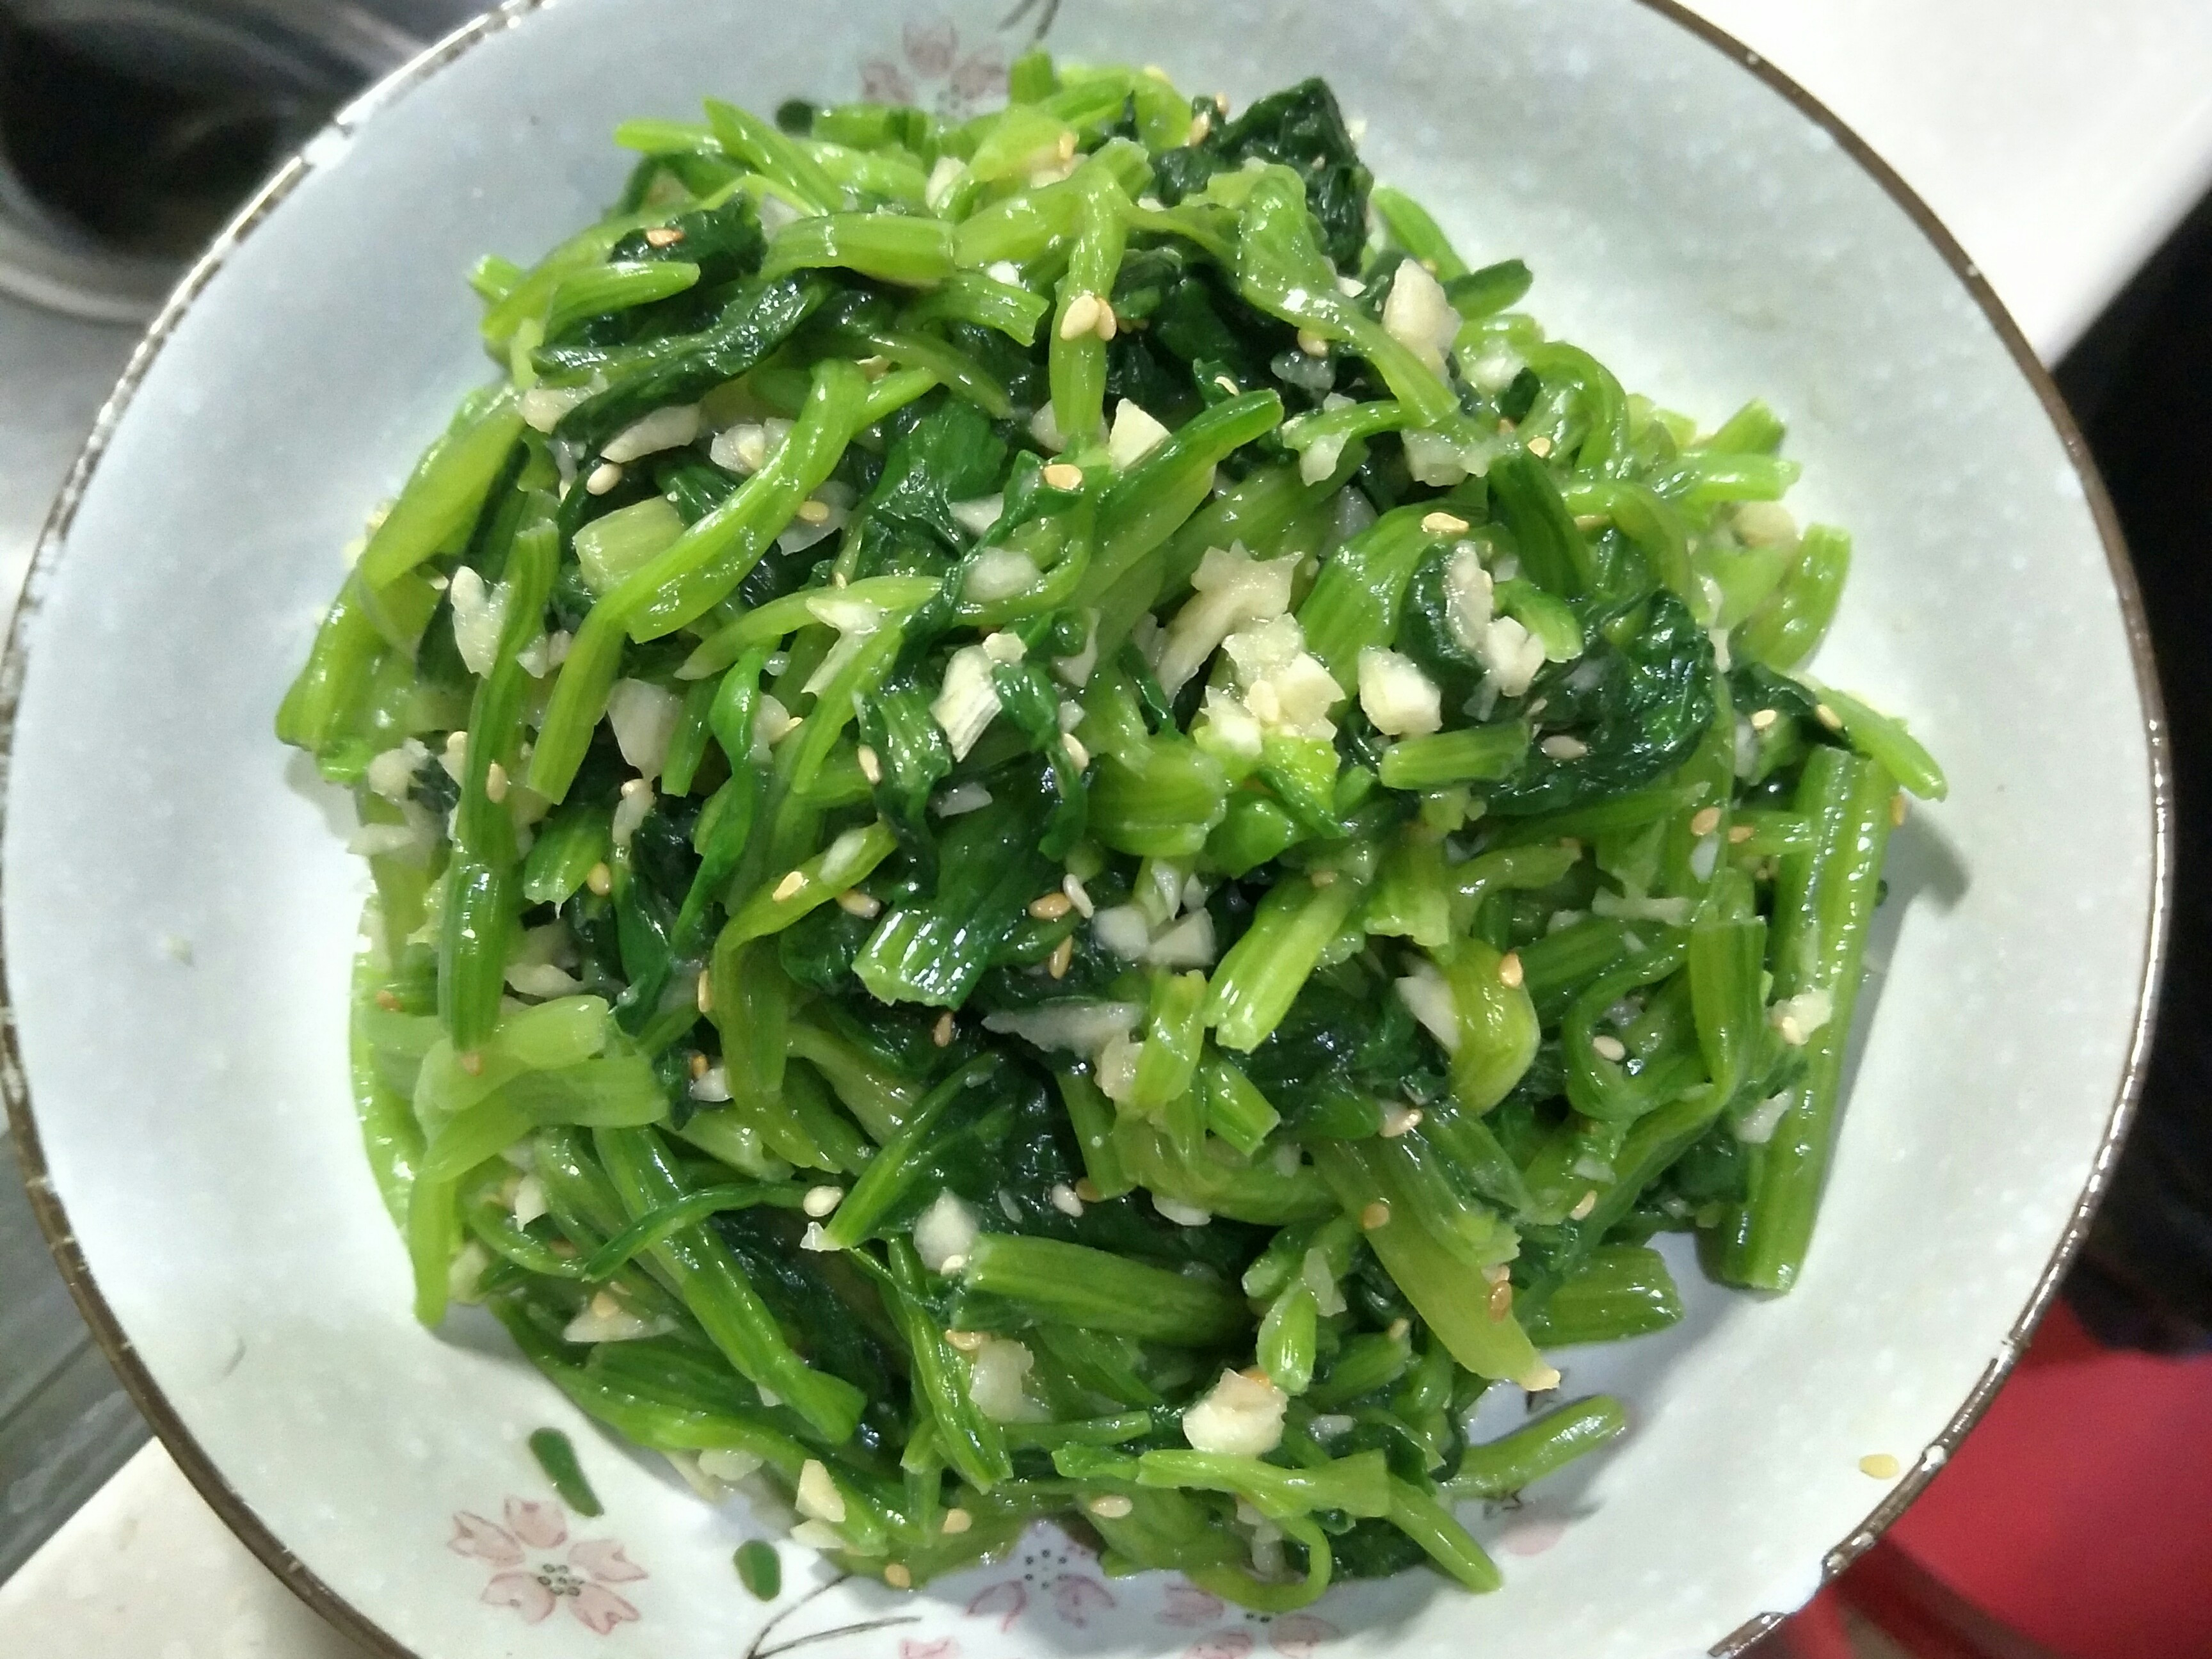 韓式涼拌菠菜